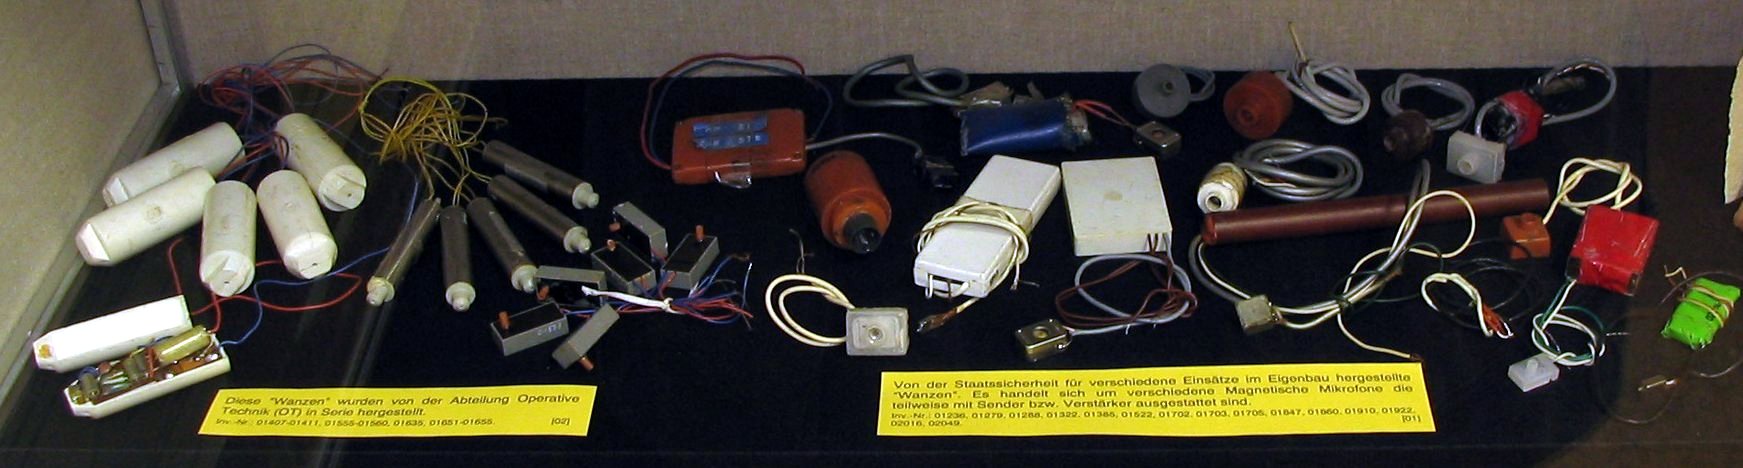 史塔西成員使用過的監聽設備